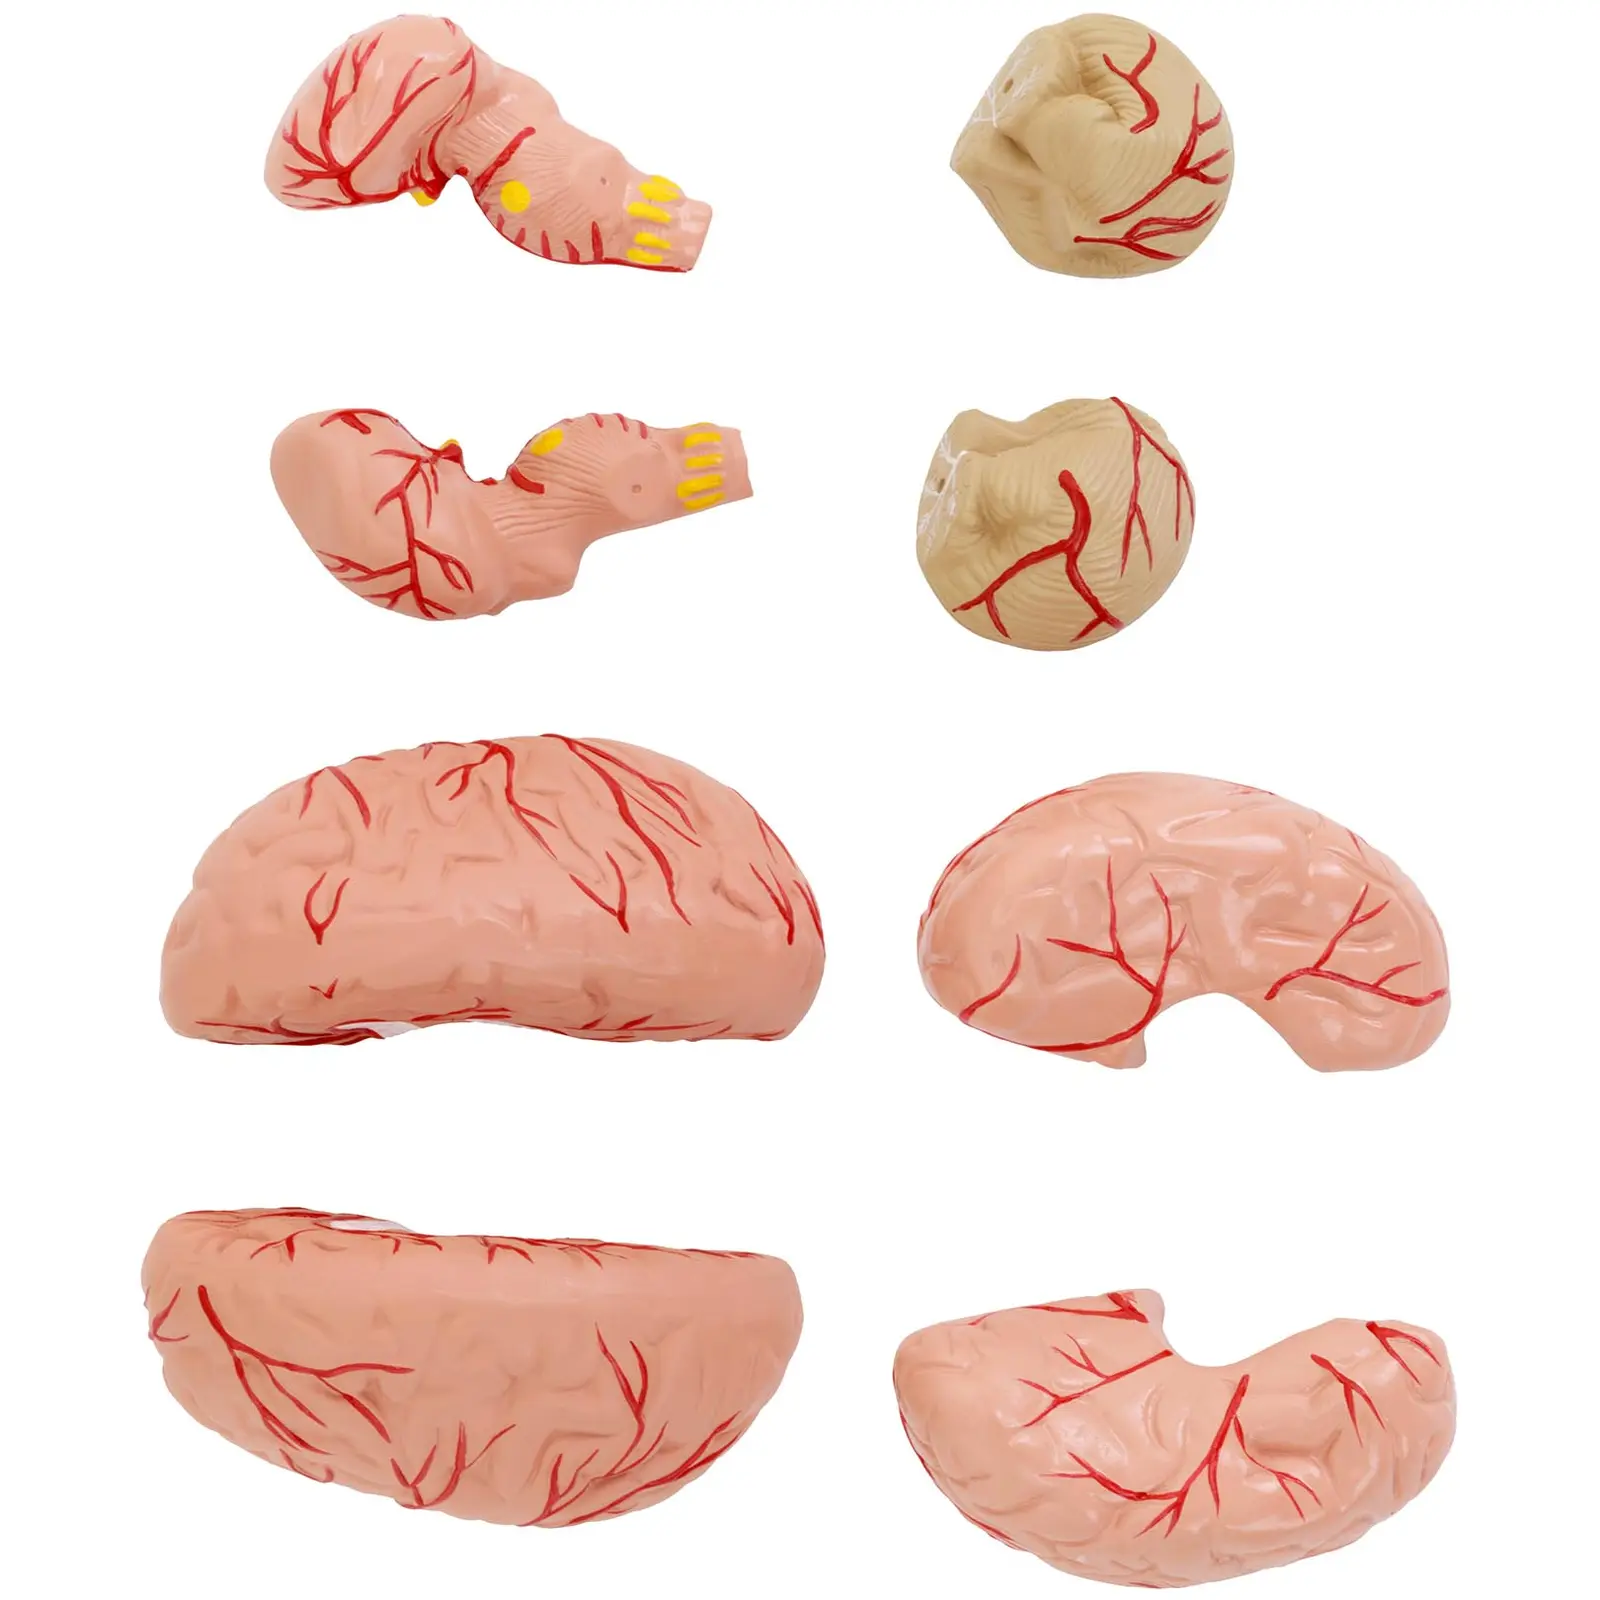 Czaszka człowieka - mózg - model anatomiczny